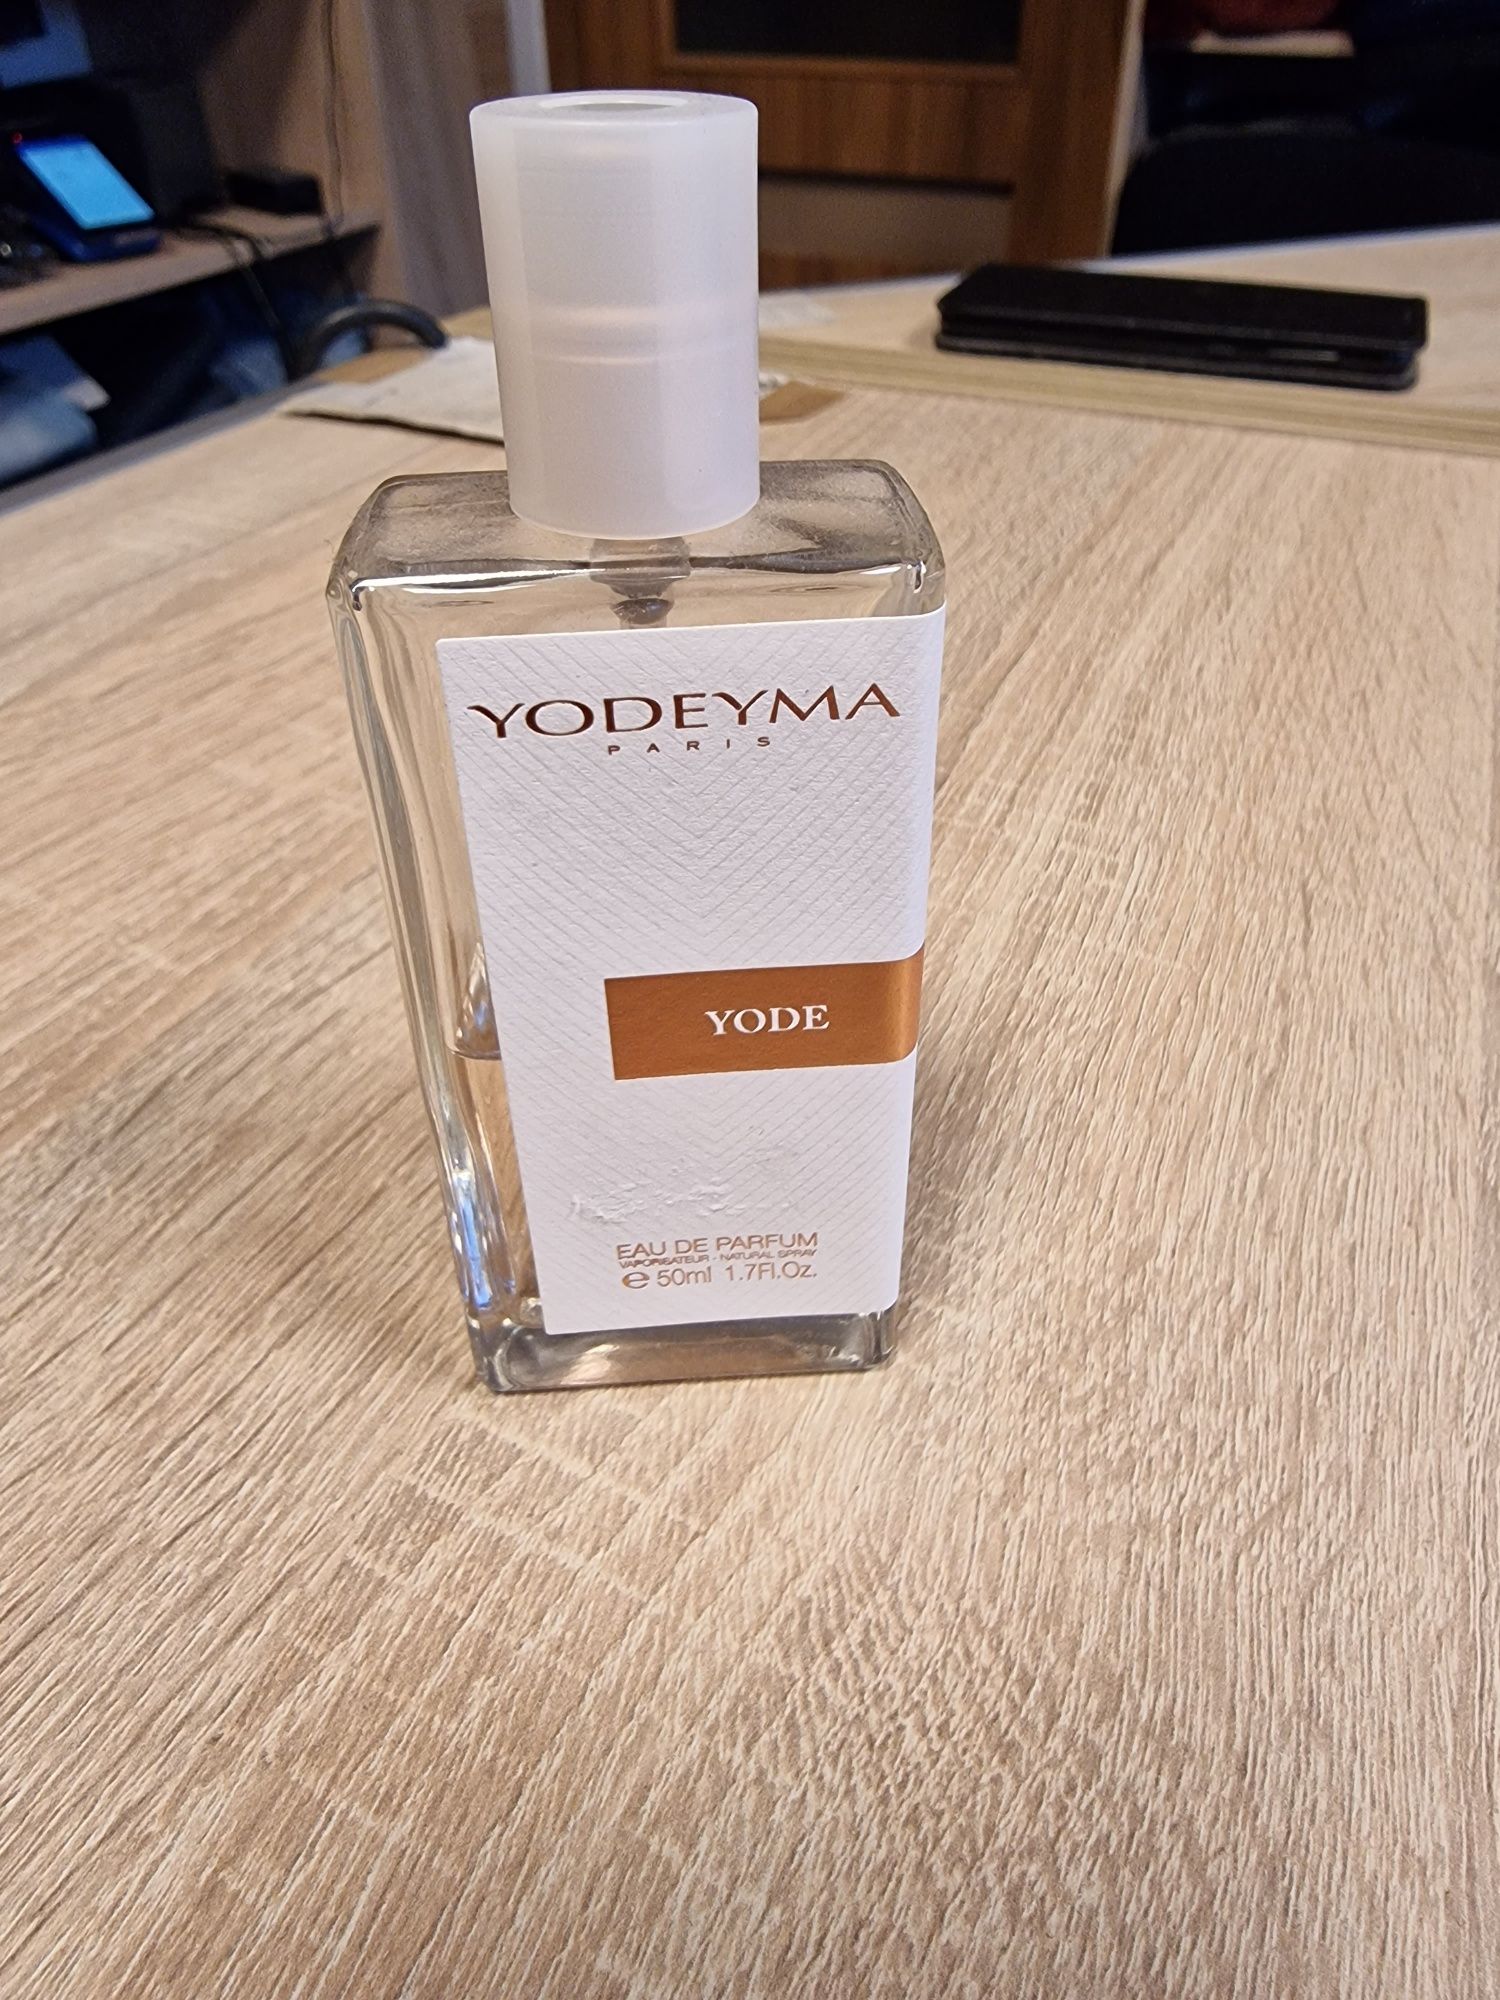 Perfumy yodeyma yode